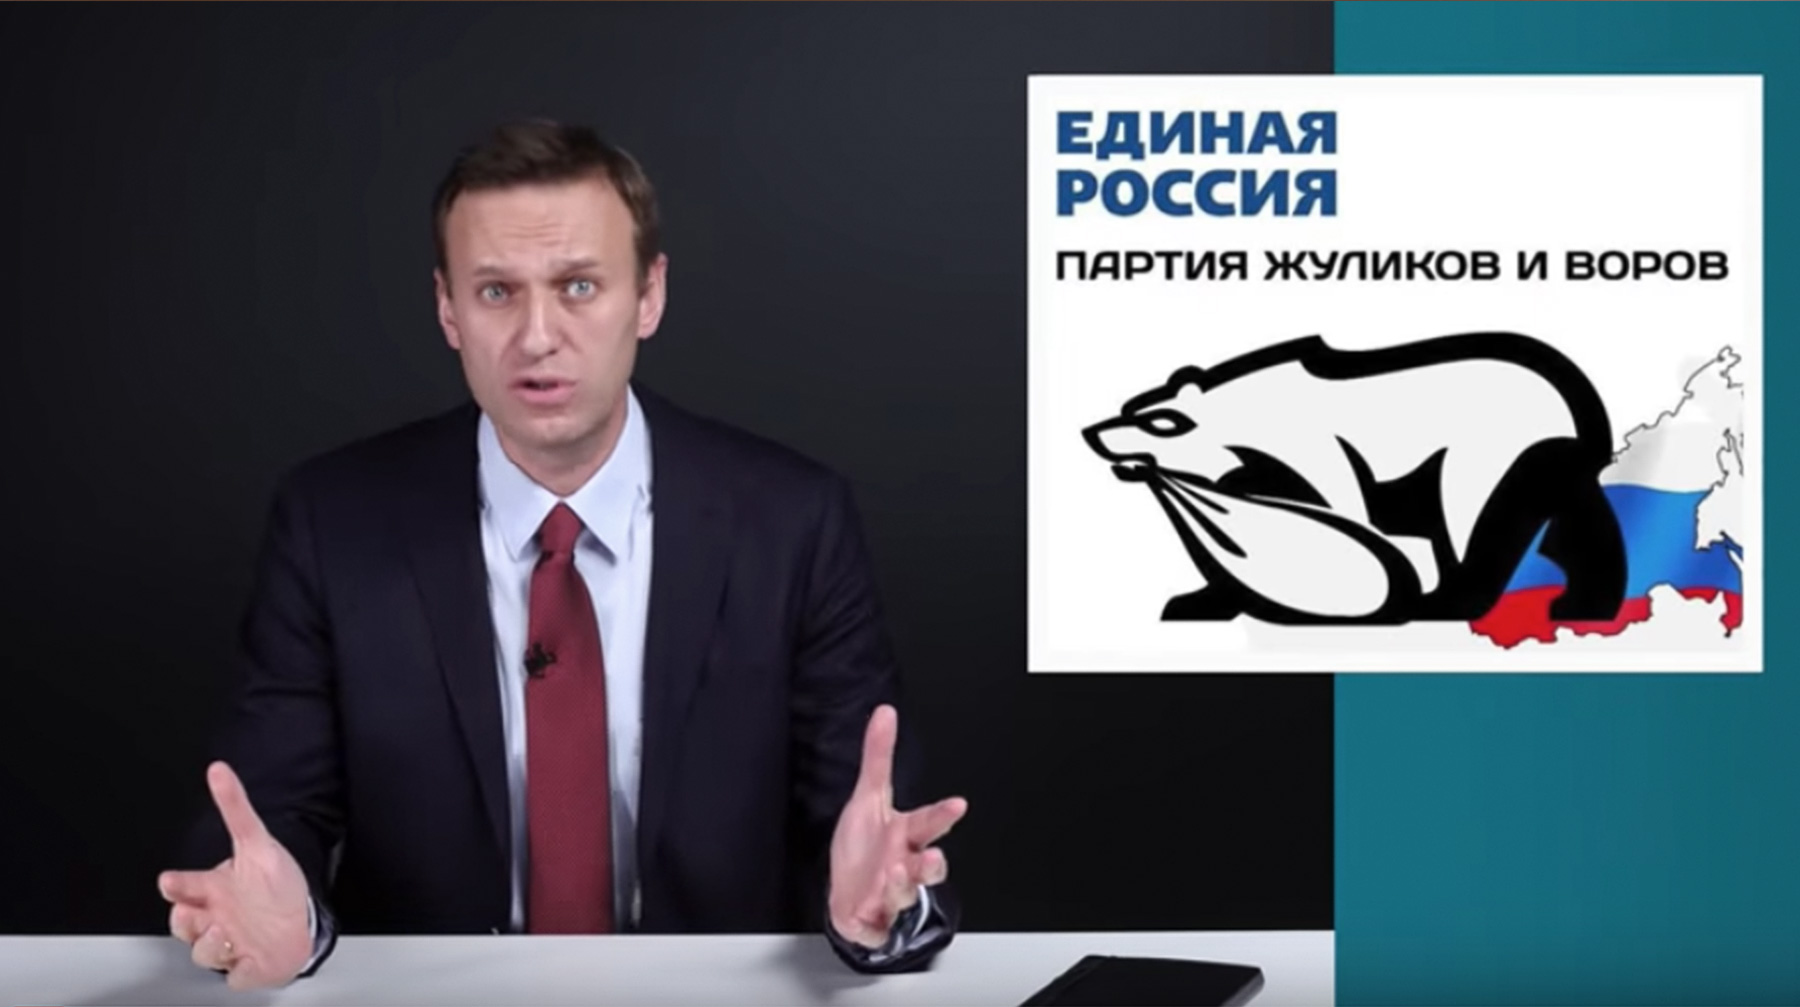 Оппозиционер предлагает использовать предлагаемую им стратегию на ближайших выборах в Мосгордуму в сентябре 2019 года undefined